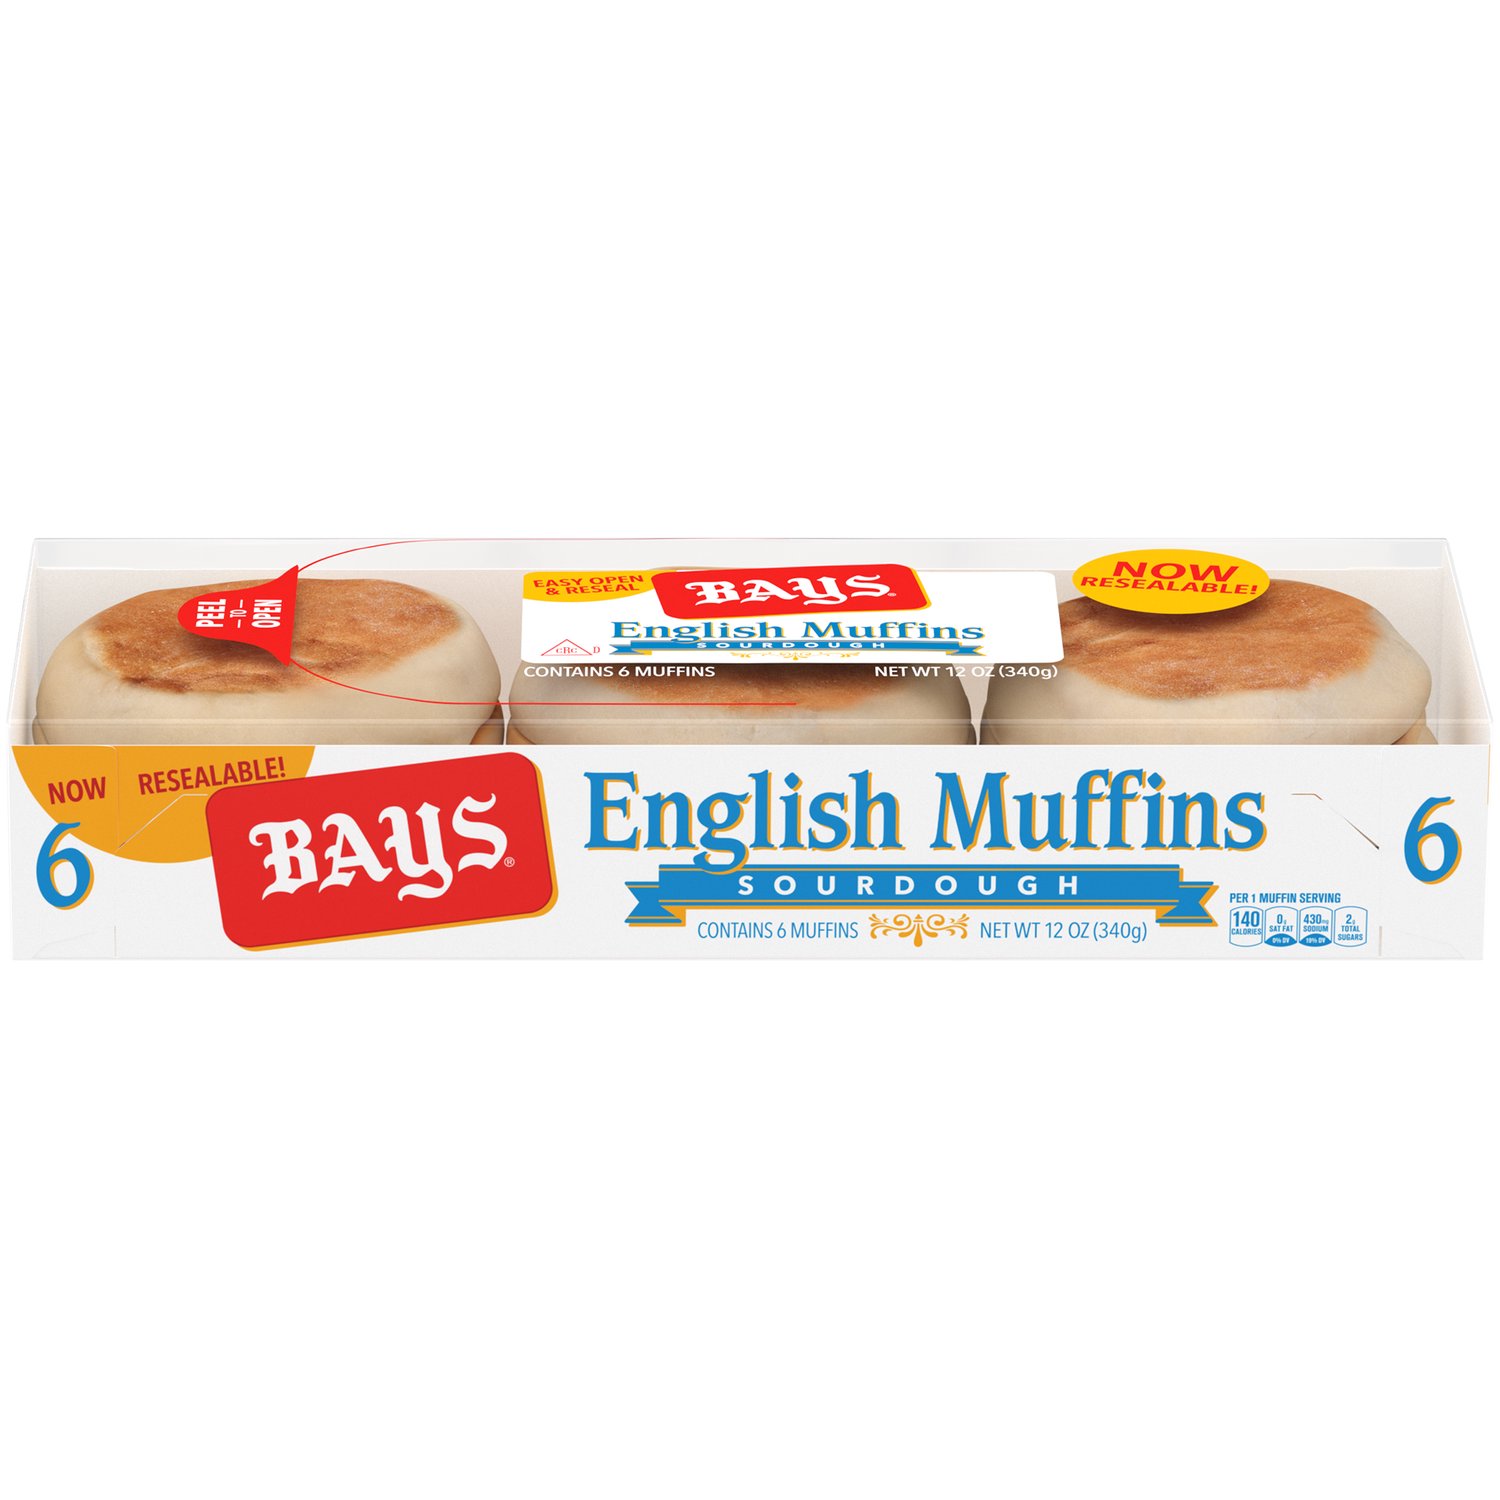 Bays English Muffins, Sourdough - Foodland